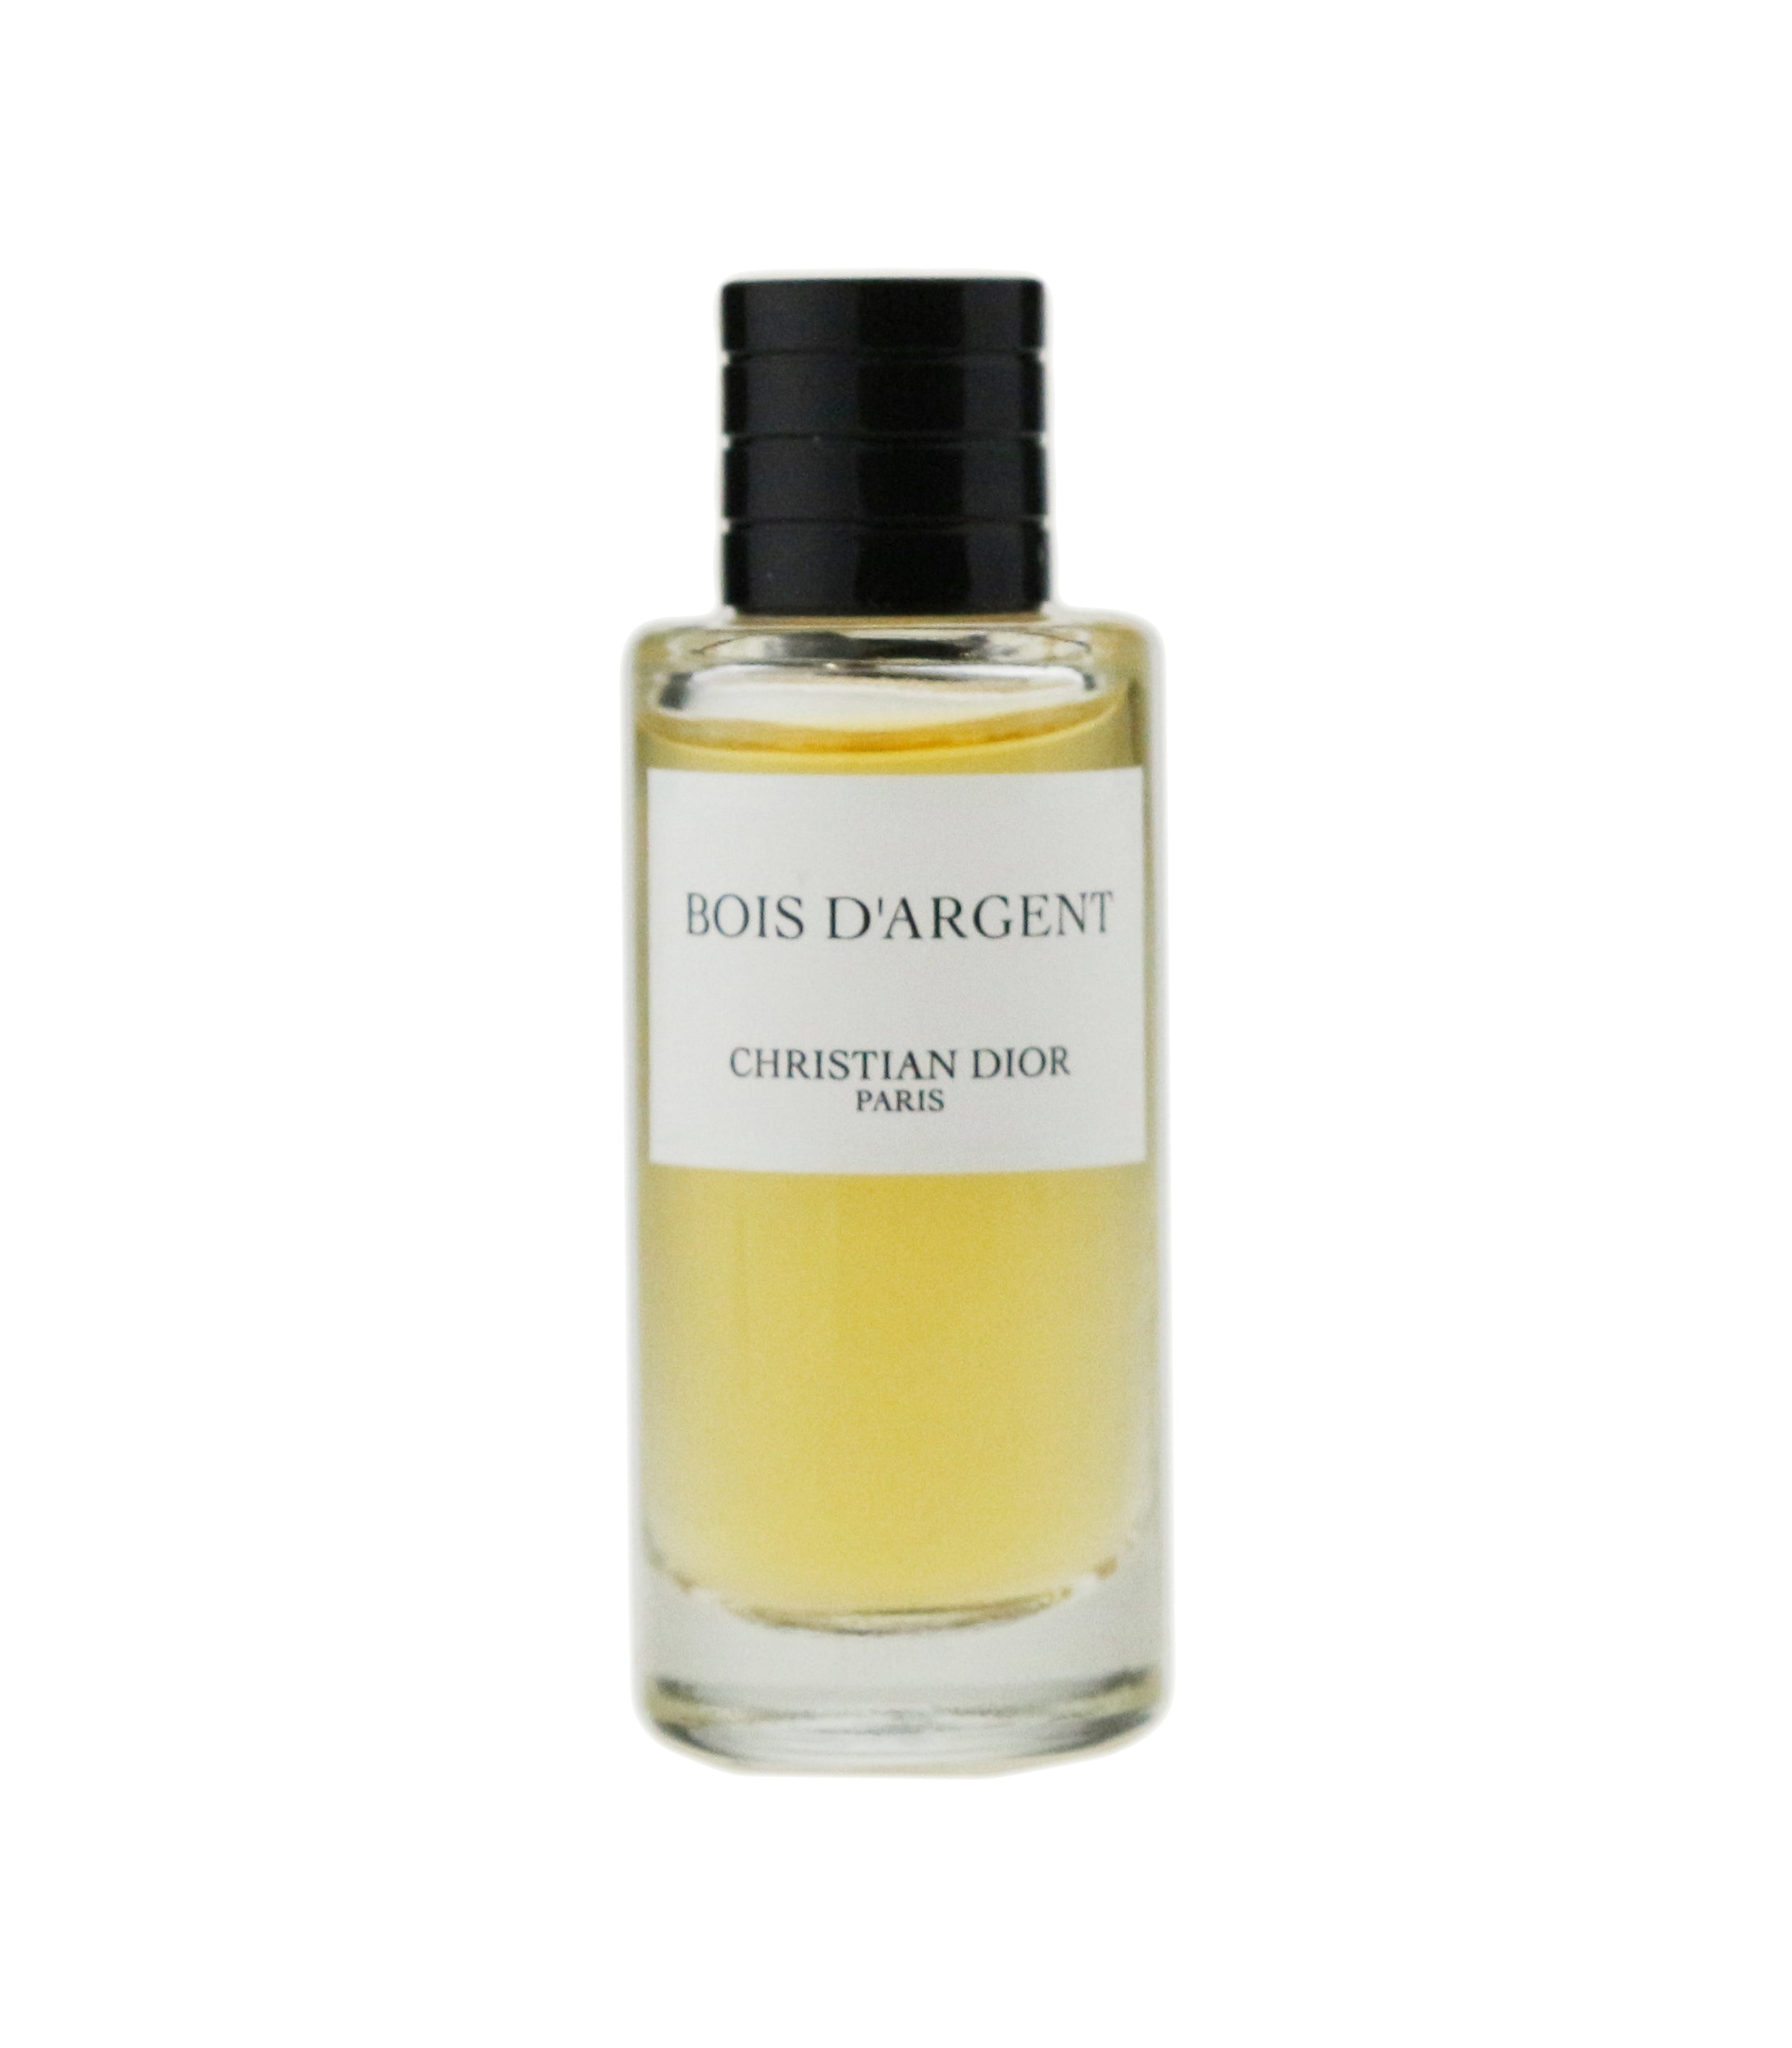 Christian Dior Bois D'Argent Eau de Parfum 4.25 oz Spray.